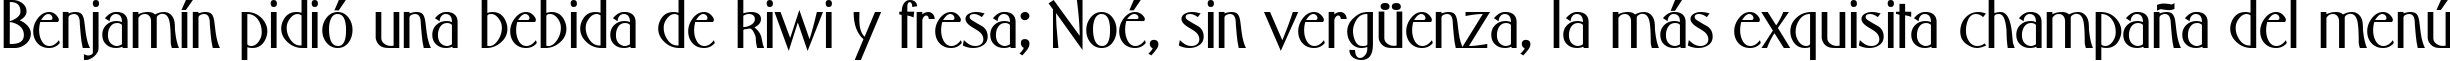 Пример написания шрифтом font149 текста на испанском